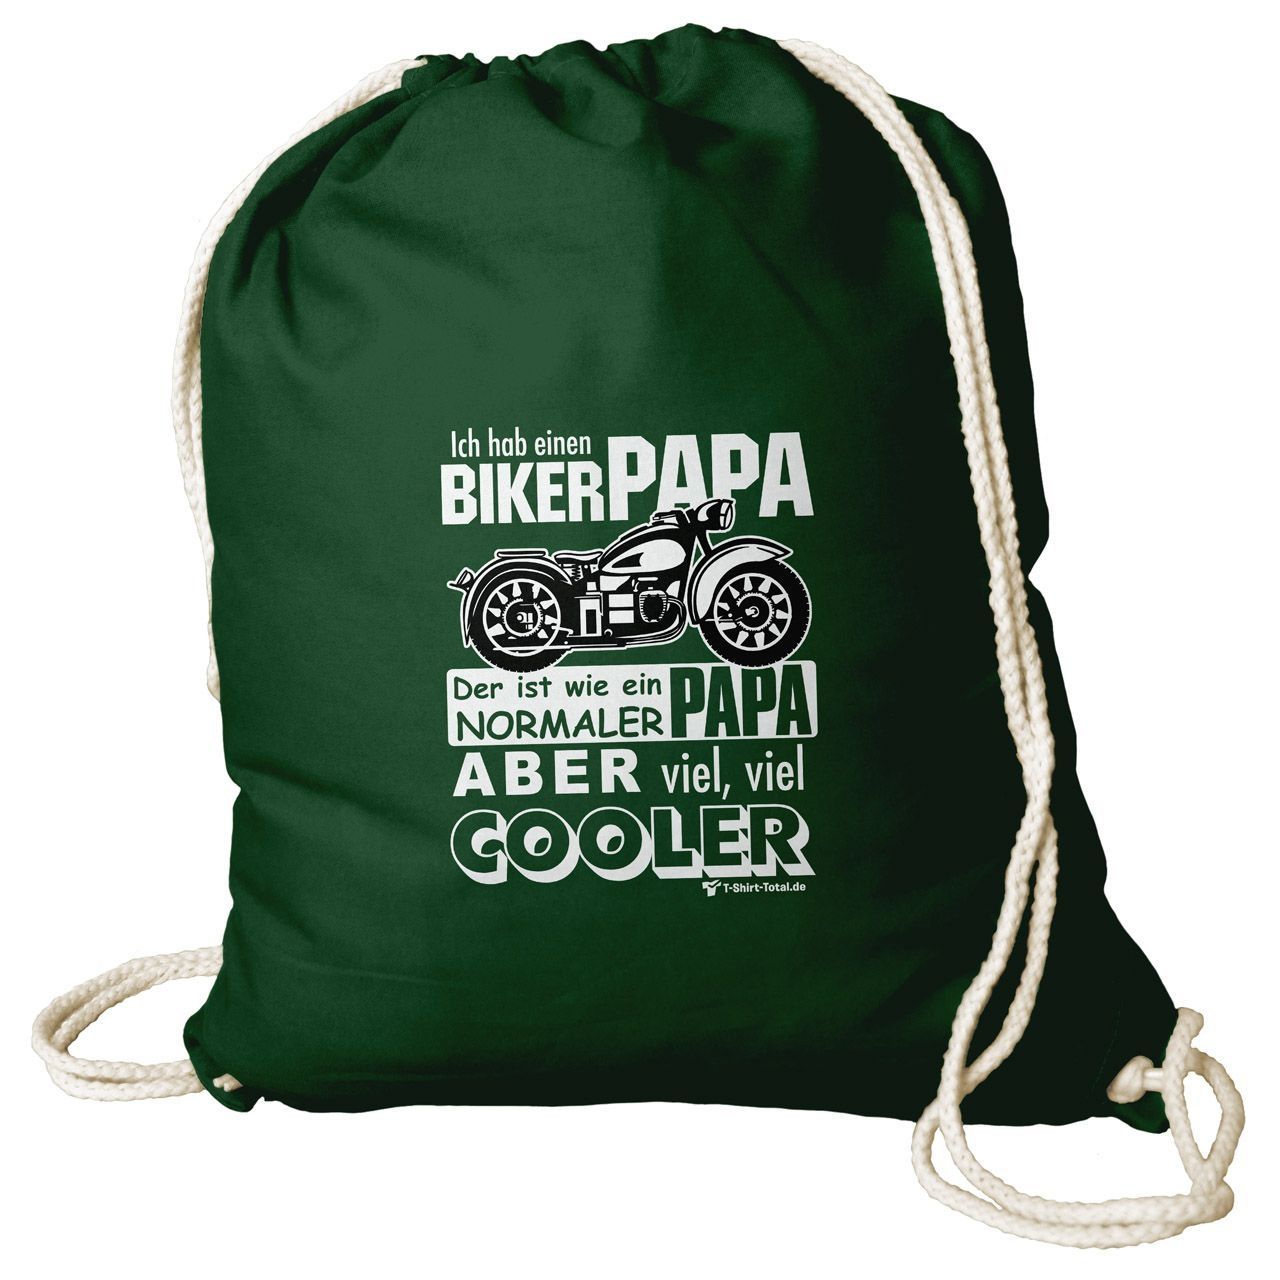 Biker Papa Rucksack Beutel dunkelgrün